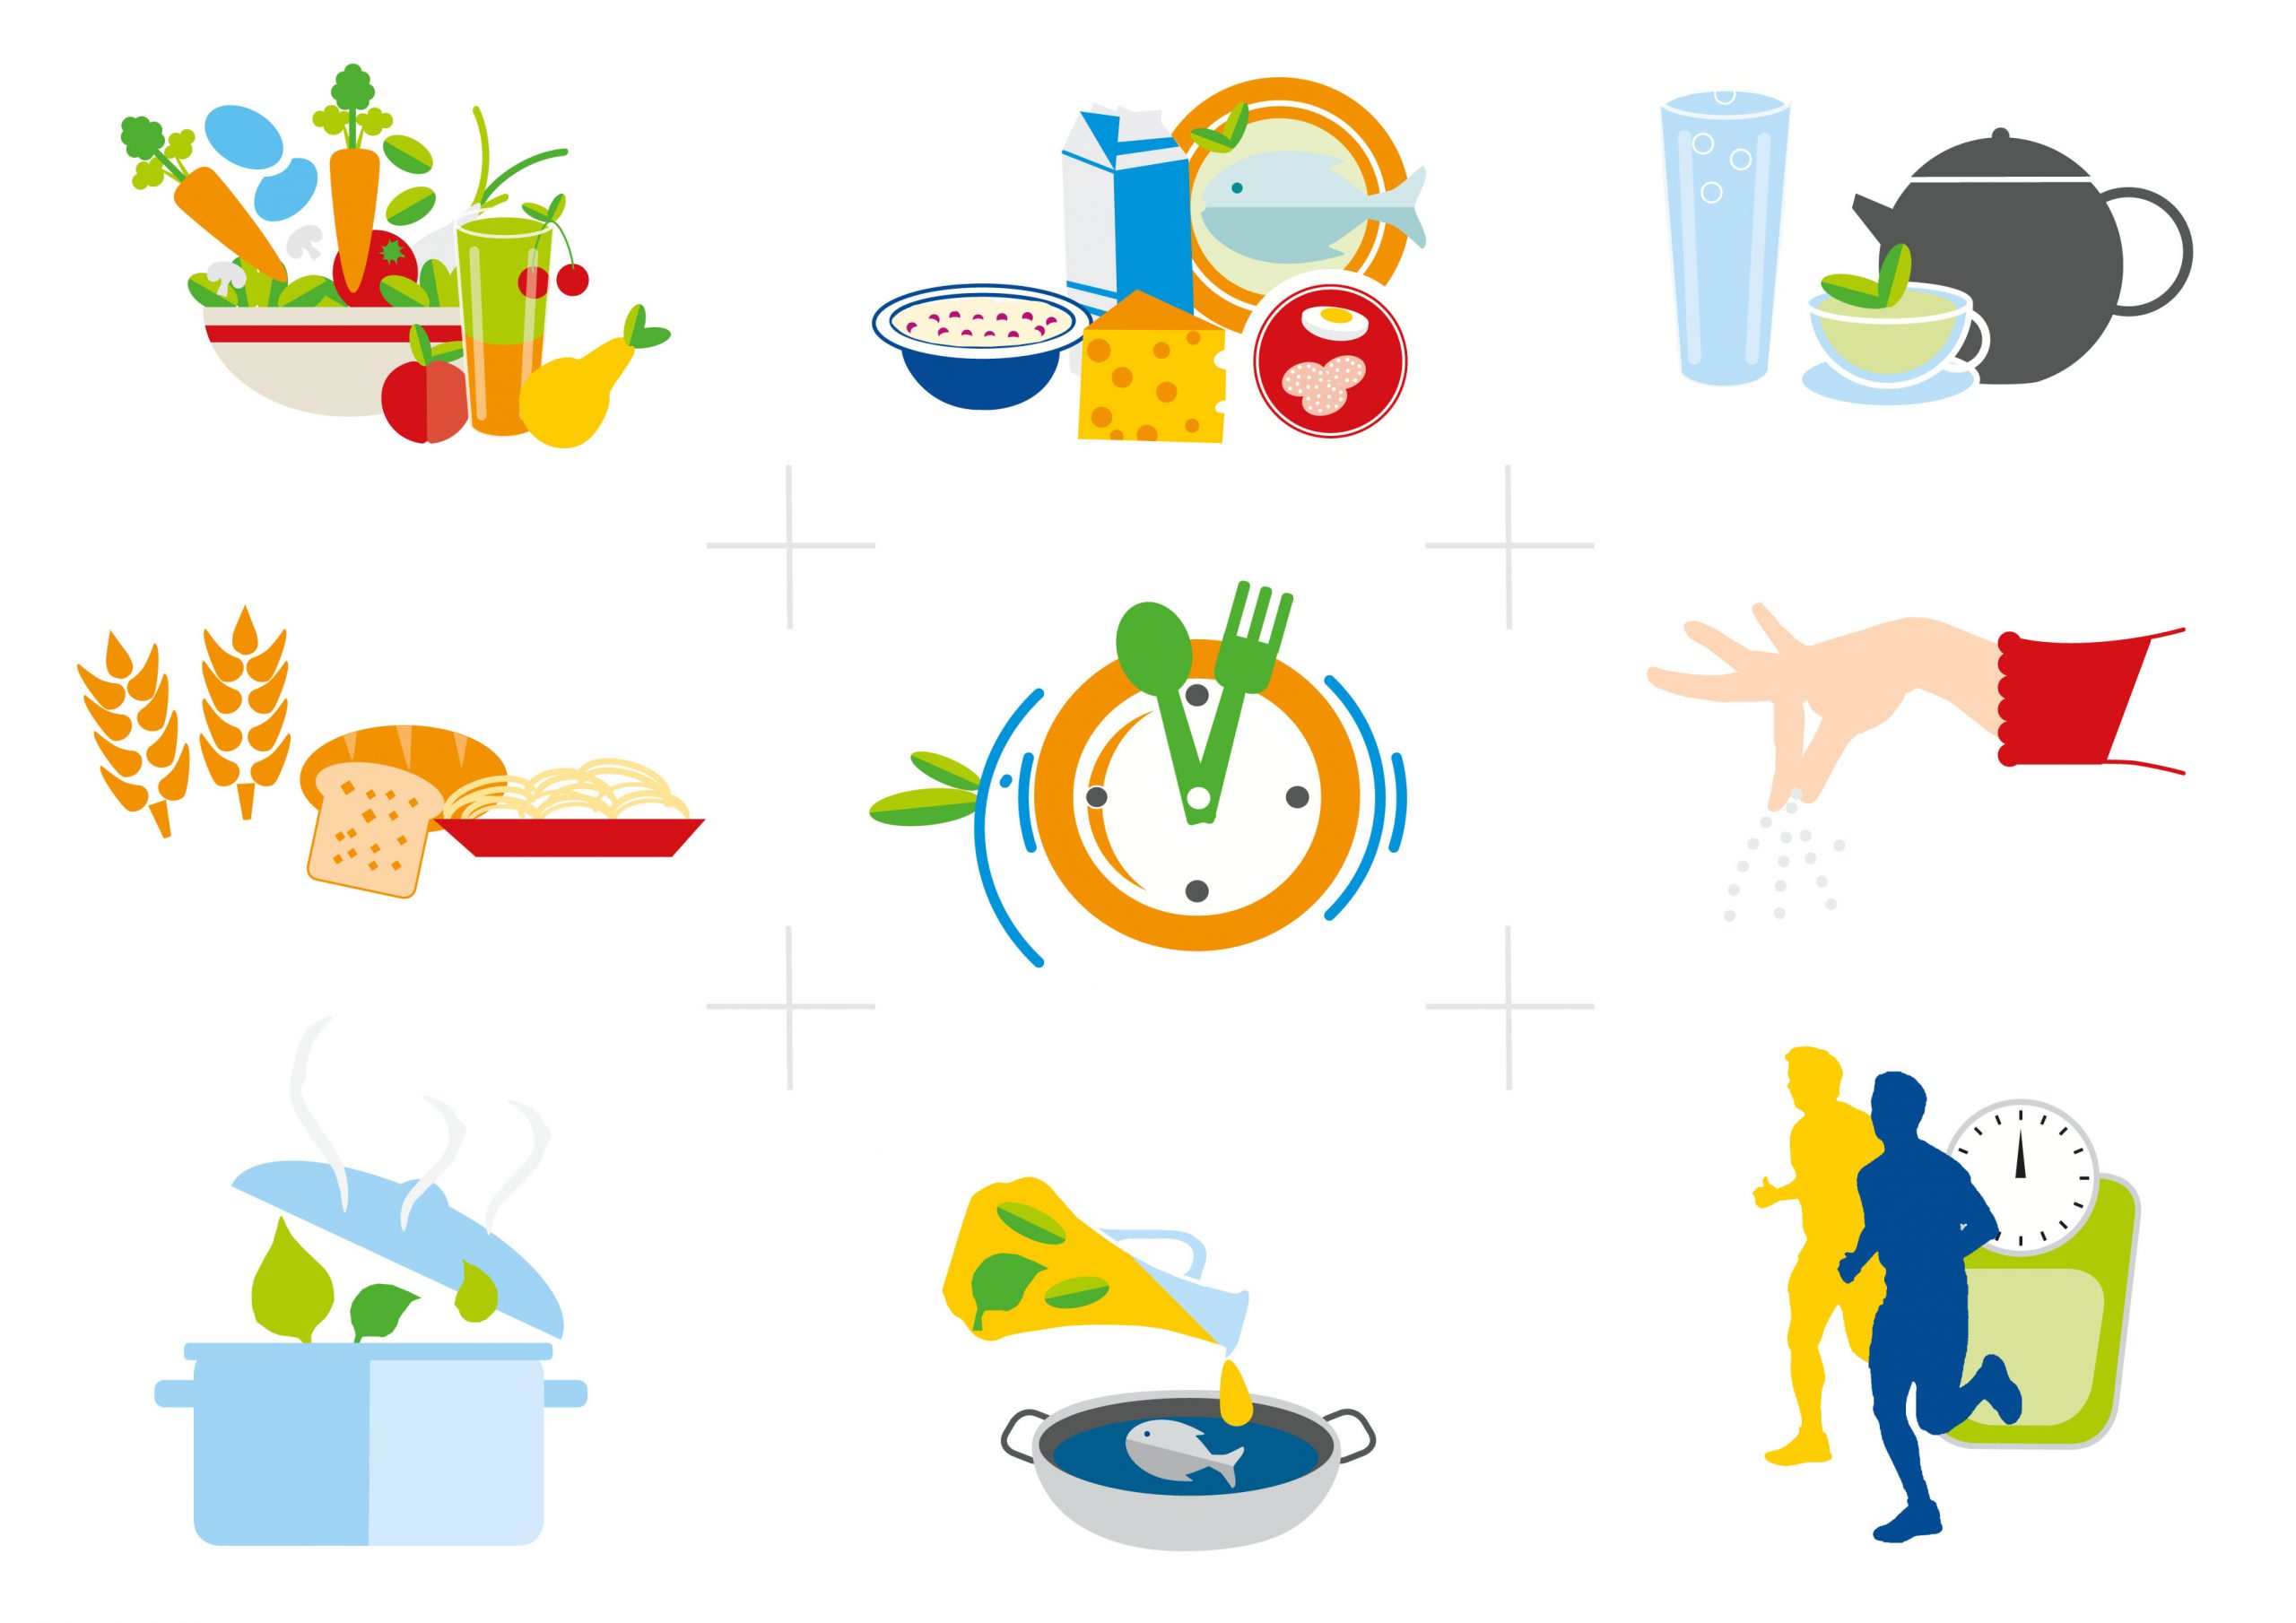 Editorial Illustration | Schulgesundheit & Prävention,10 Regeln der Deutschen Gesellschaft für Ernährung: Einzel-Illustrationen zu den 10 Empfehlungen der DGE